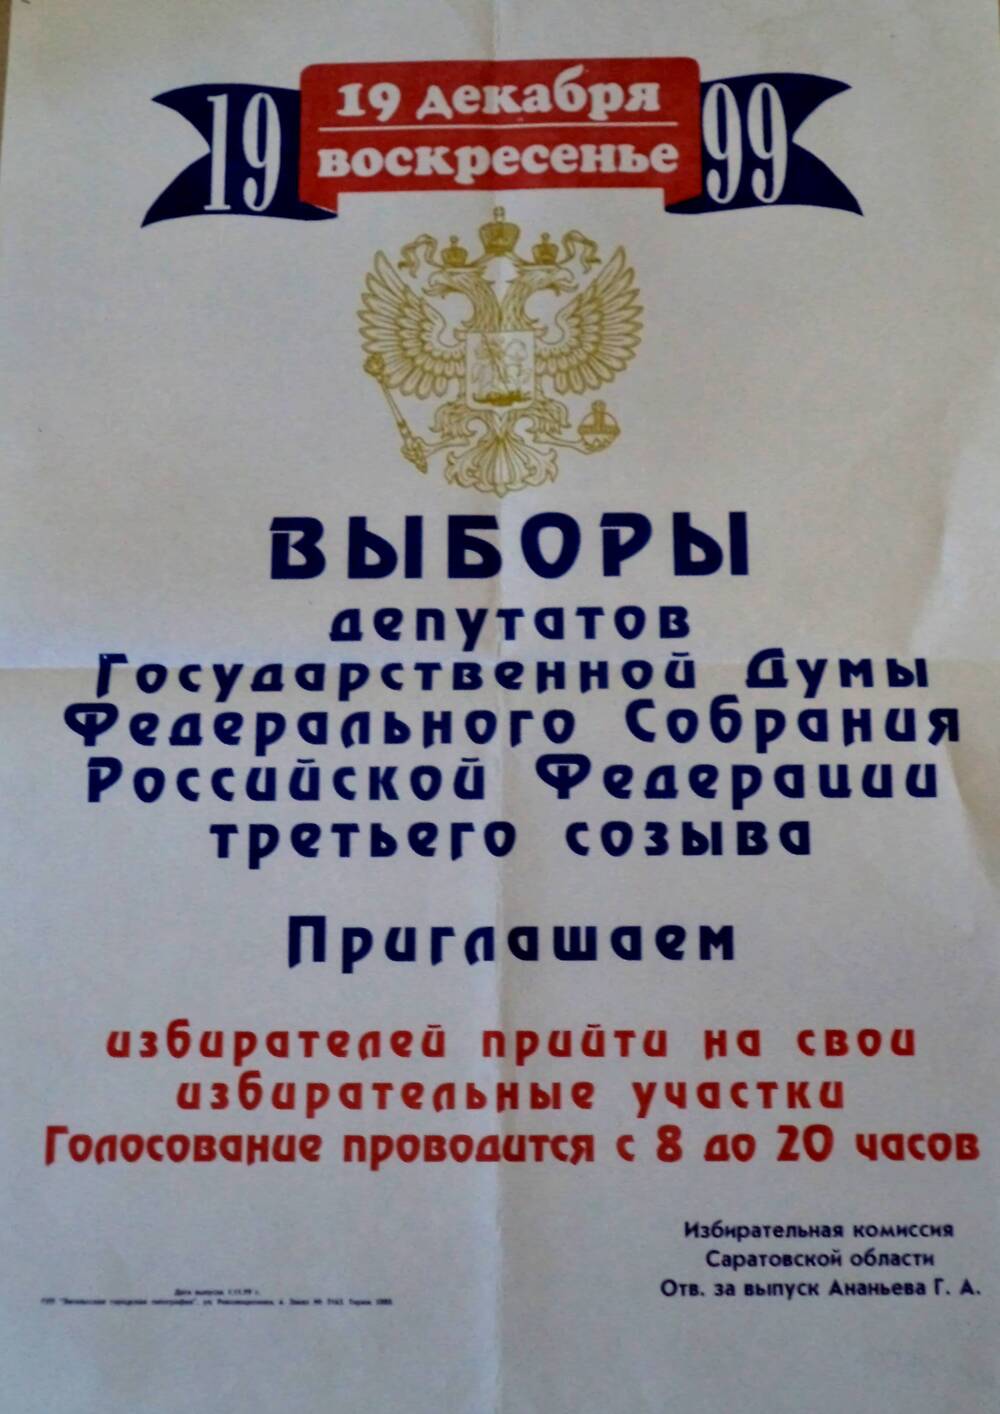 Плакат Выборы депутатов Государственной Думы Федерального Собрания РФ третьего созыва, которые состоятся 19 декабря 1999 года.